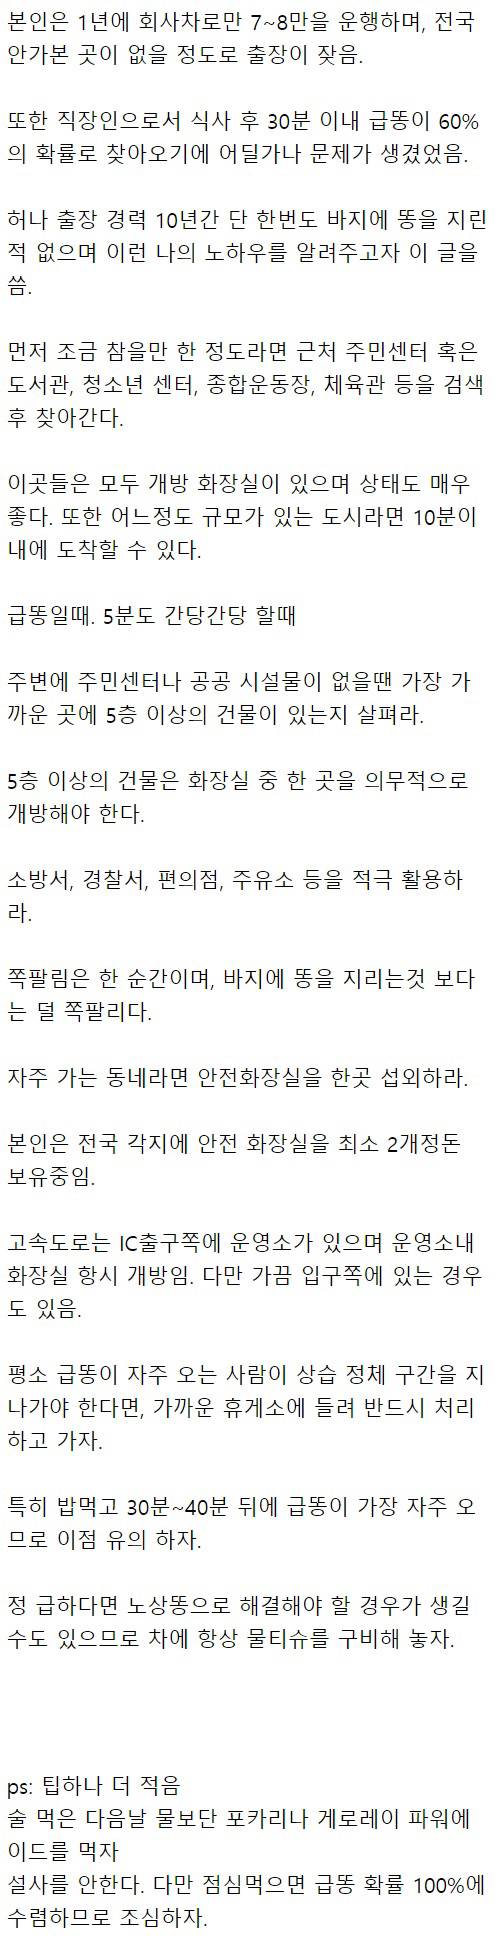 지방 출장 잦은 네티즌의 급똥시 팁.jpg | 인스티즈